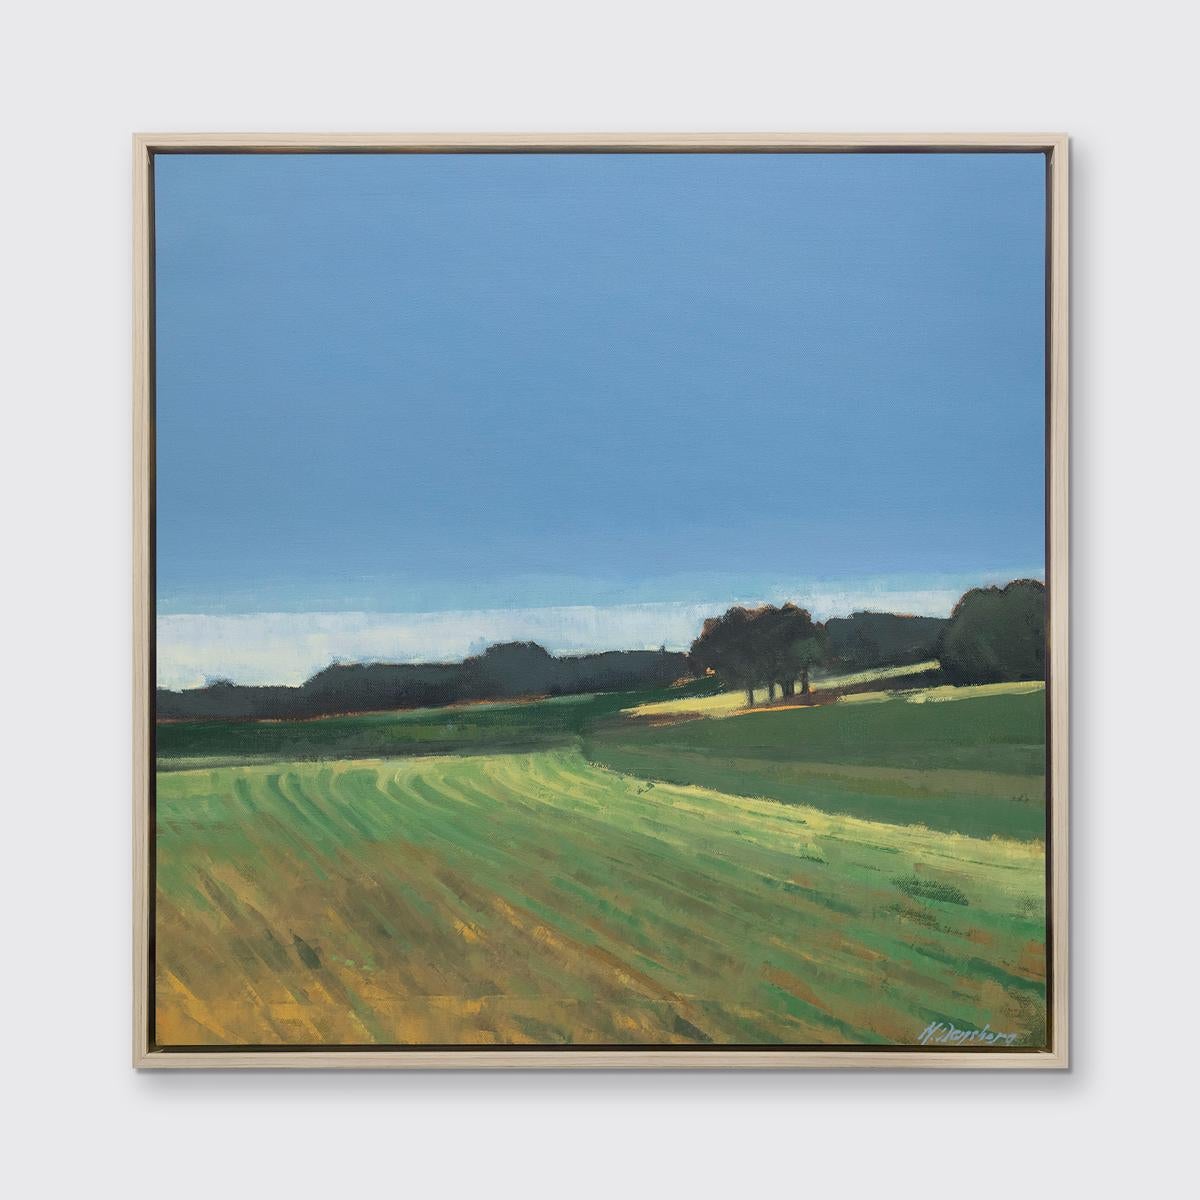 Diese limitierte Auflage des Giclée-Landschaftsdrucks von Molly Doe Wensberg hat eine Auflagenhöhe von 195. Es zeichnet sich durch eine kühle blaue und grüne Farbpalette mit warmen gelben Akzenten aus. Der Künstler fängt eine Szene eines Feldes mit